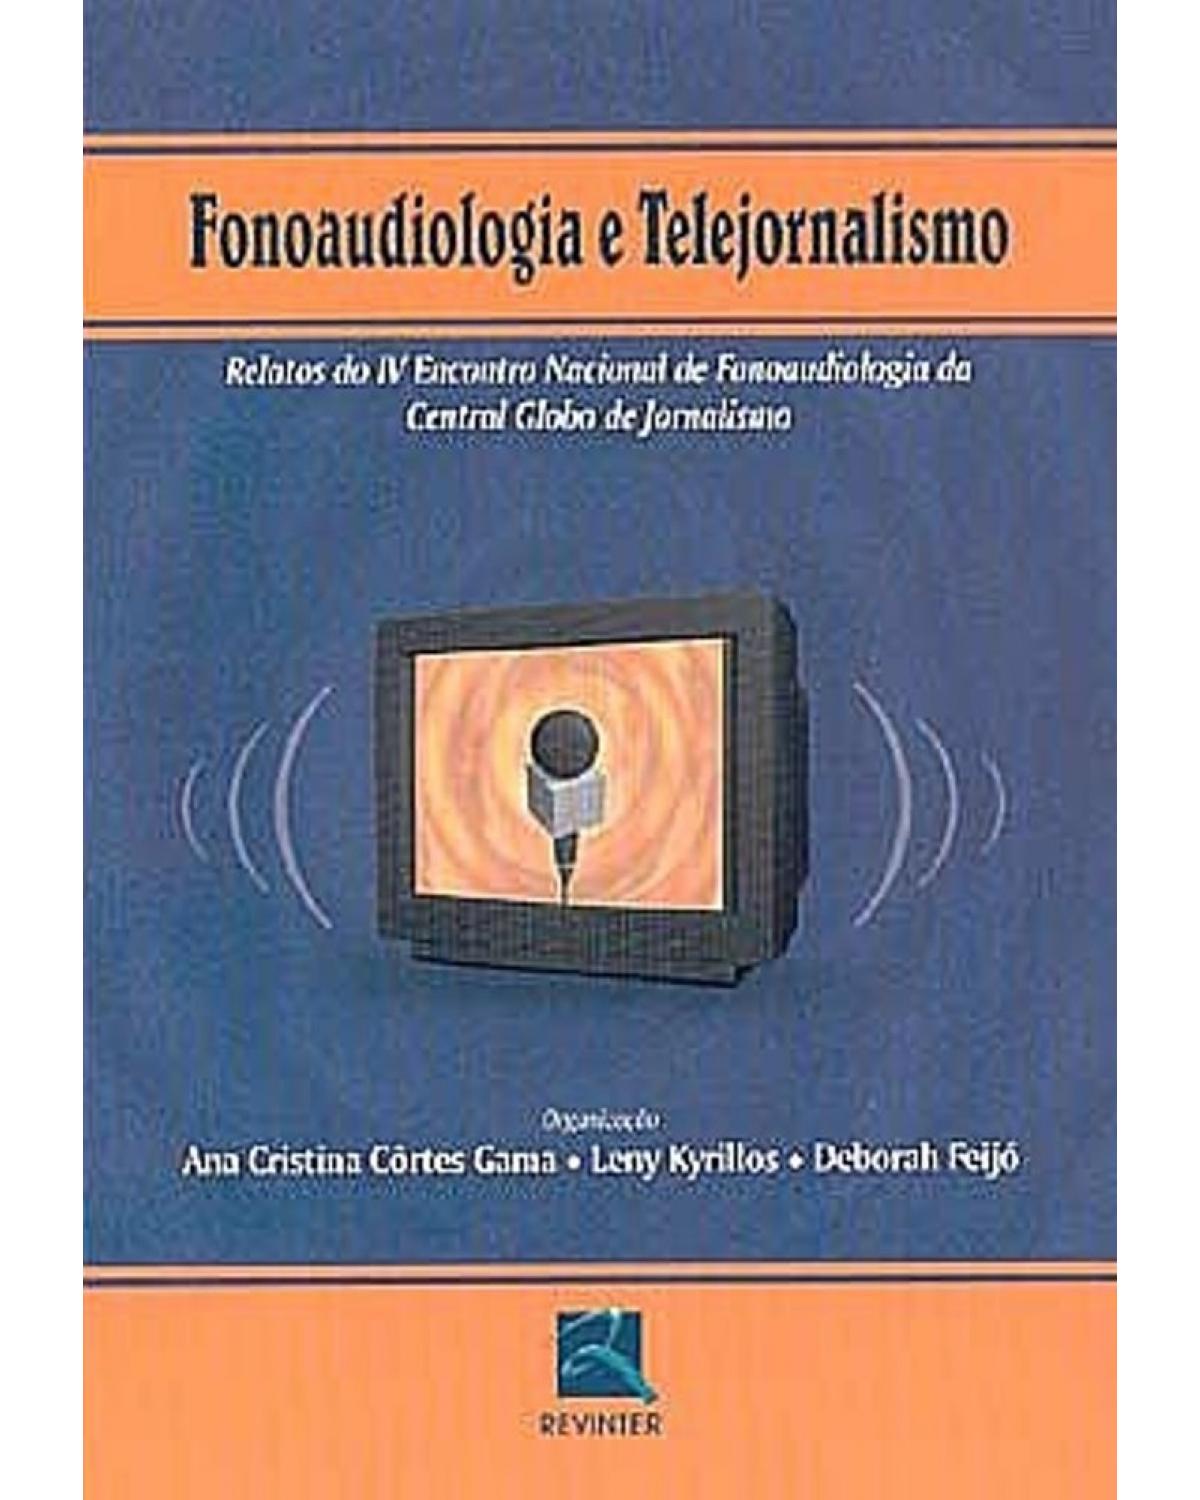 Fonoaudiologia e telejornalismo - 1ª Edição | 2005